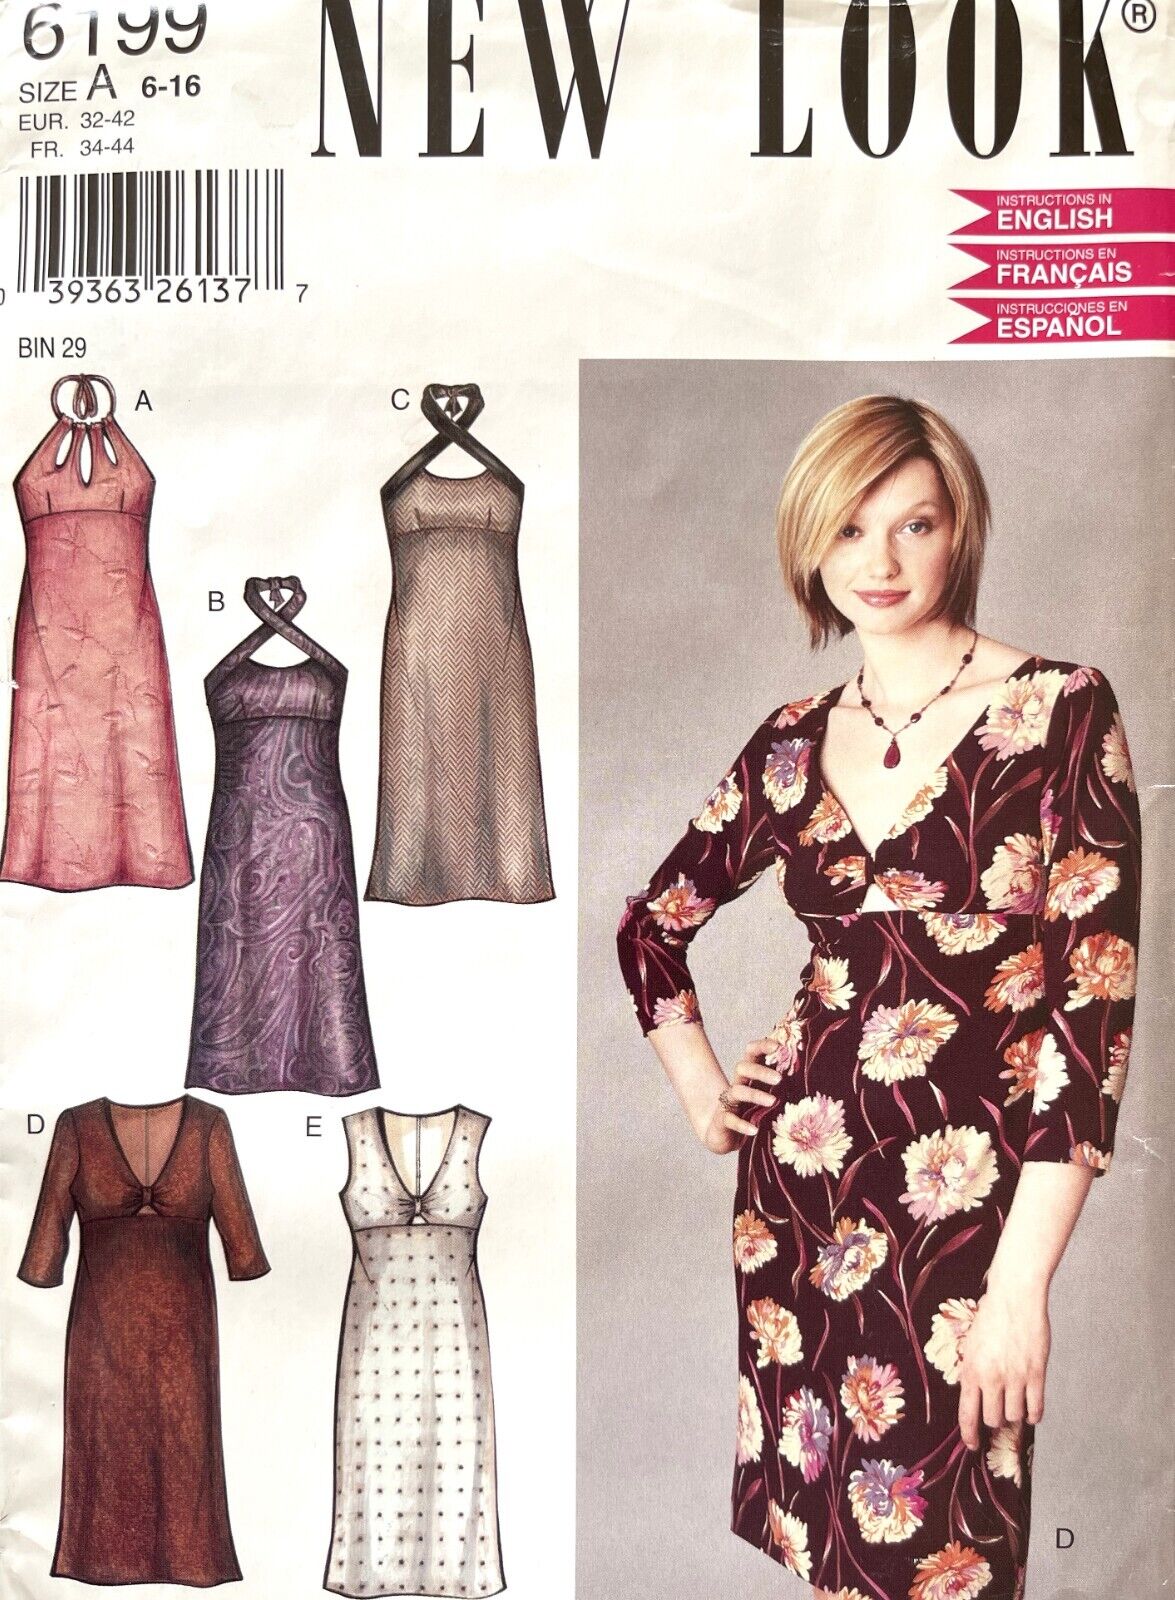 1990's New Look Misses' Dress Pattern 6199 Size 6-16 UNCUT